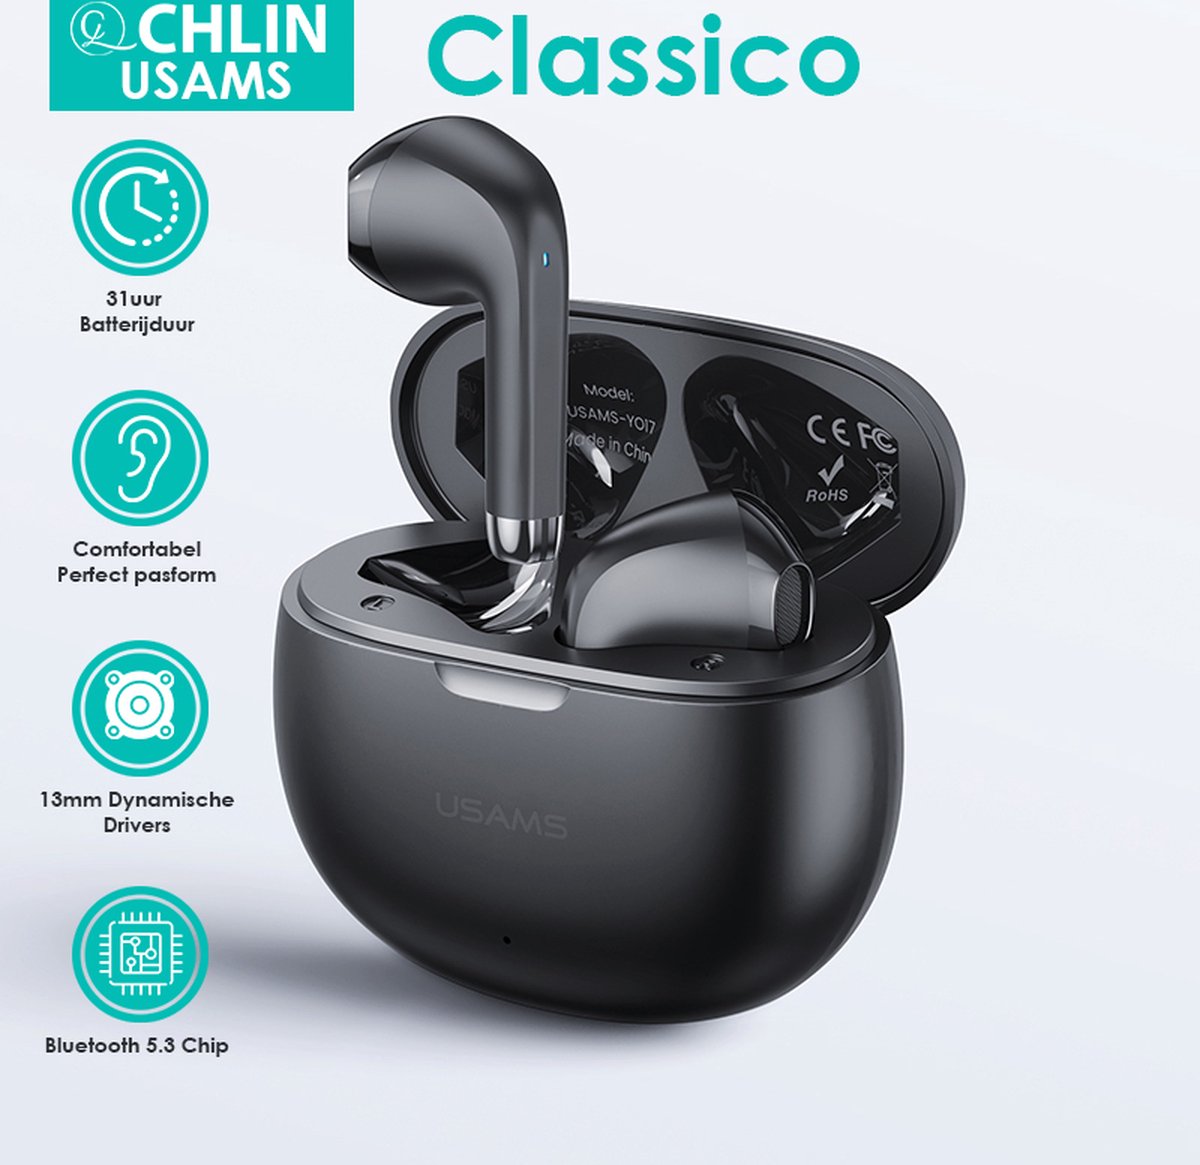 CL CHLIN Classico Zwart - Volledige Draadloze In-Ear Bluetooth 5.3 oordopje - Open ear oordopje - Hifi geluids kwaliteit - Draadloze oortje Bluetooth - Sport oordopjes - bluetooth oordopjes - draadloze oordopjes - oortjes draadloos - in-ear oordopjes